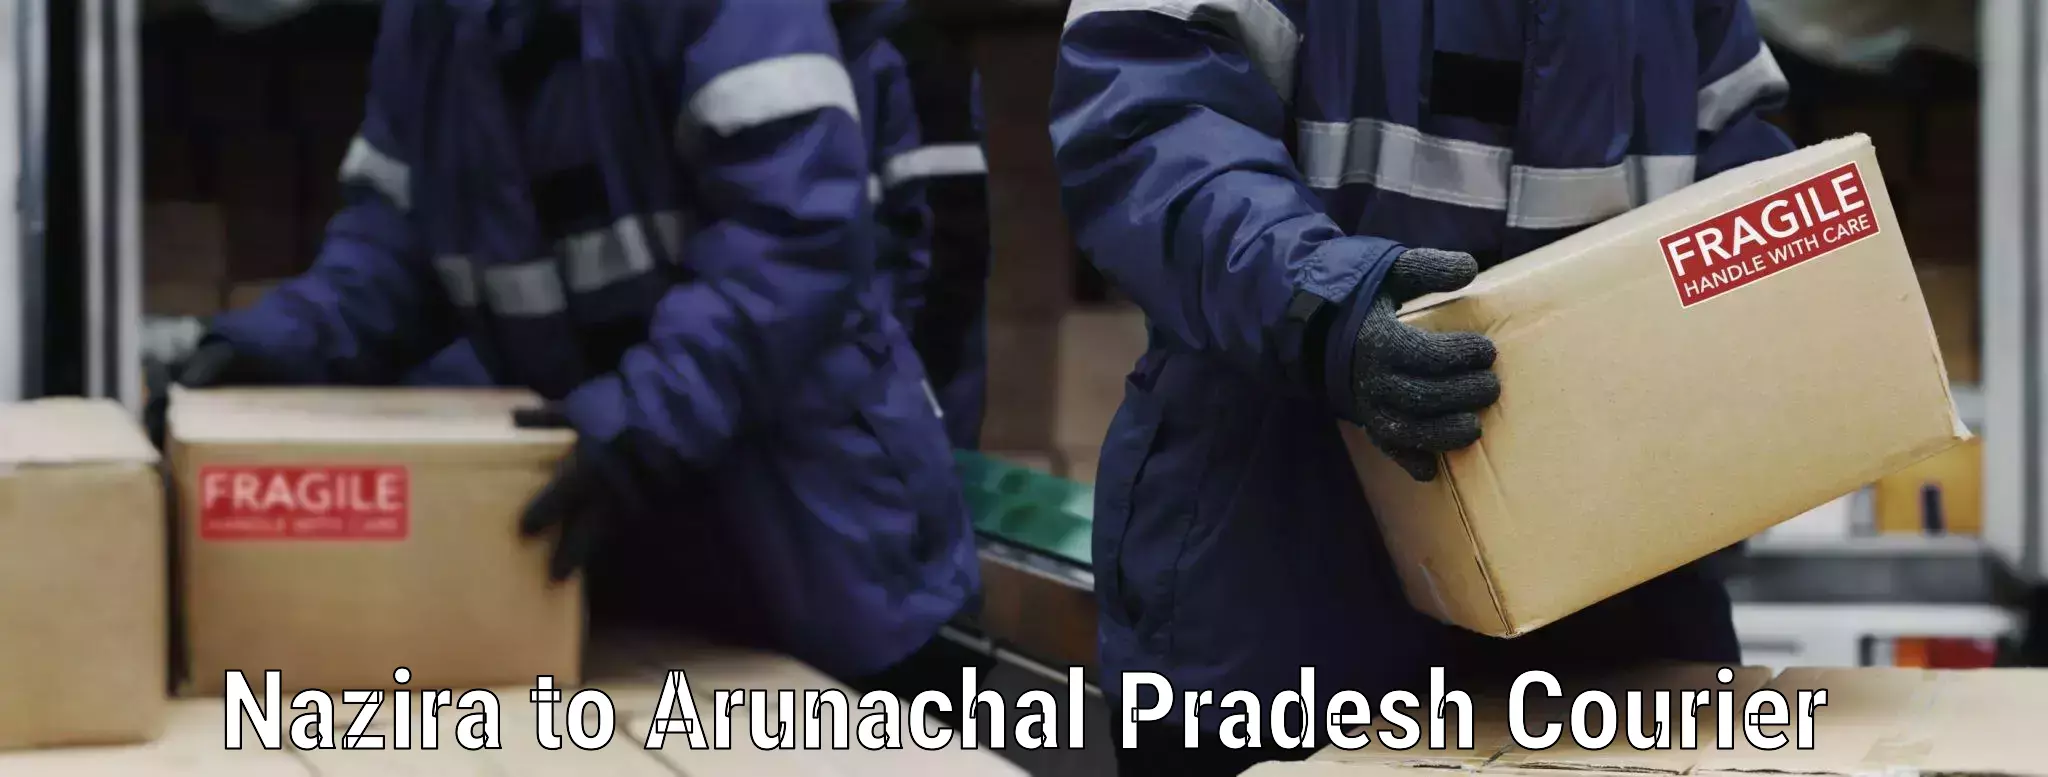 Trusted furniture movers Nazira to Arunachal Pradesh